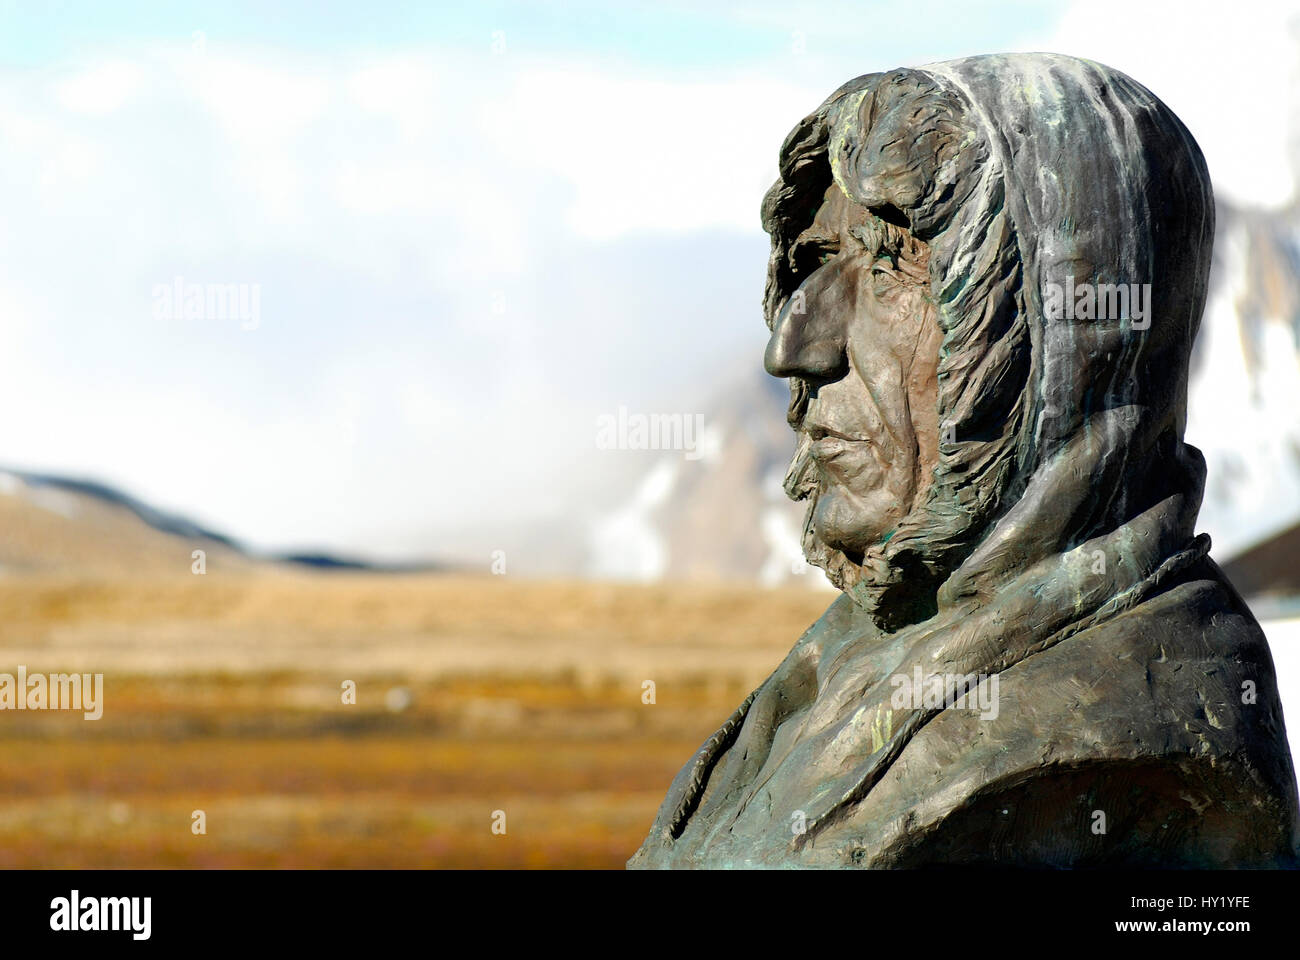 Questo stock foto mostra una statua di Roald Amundsen nel remoto villaggio di Ny Alesund; Spitsbergen. Amundsen era un esploratore norvegese delle regioni polari Foto Stock